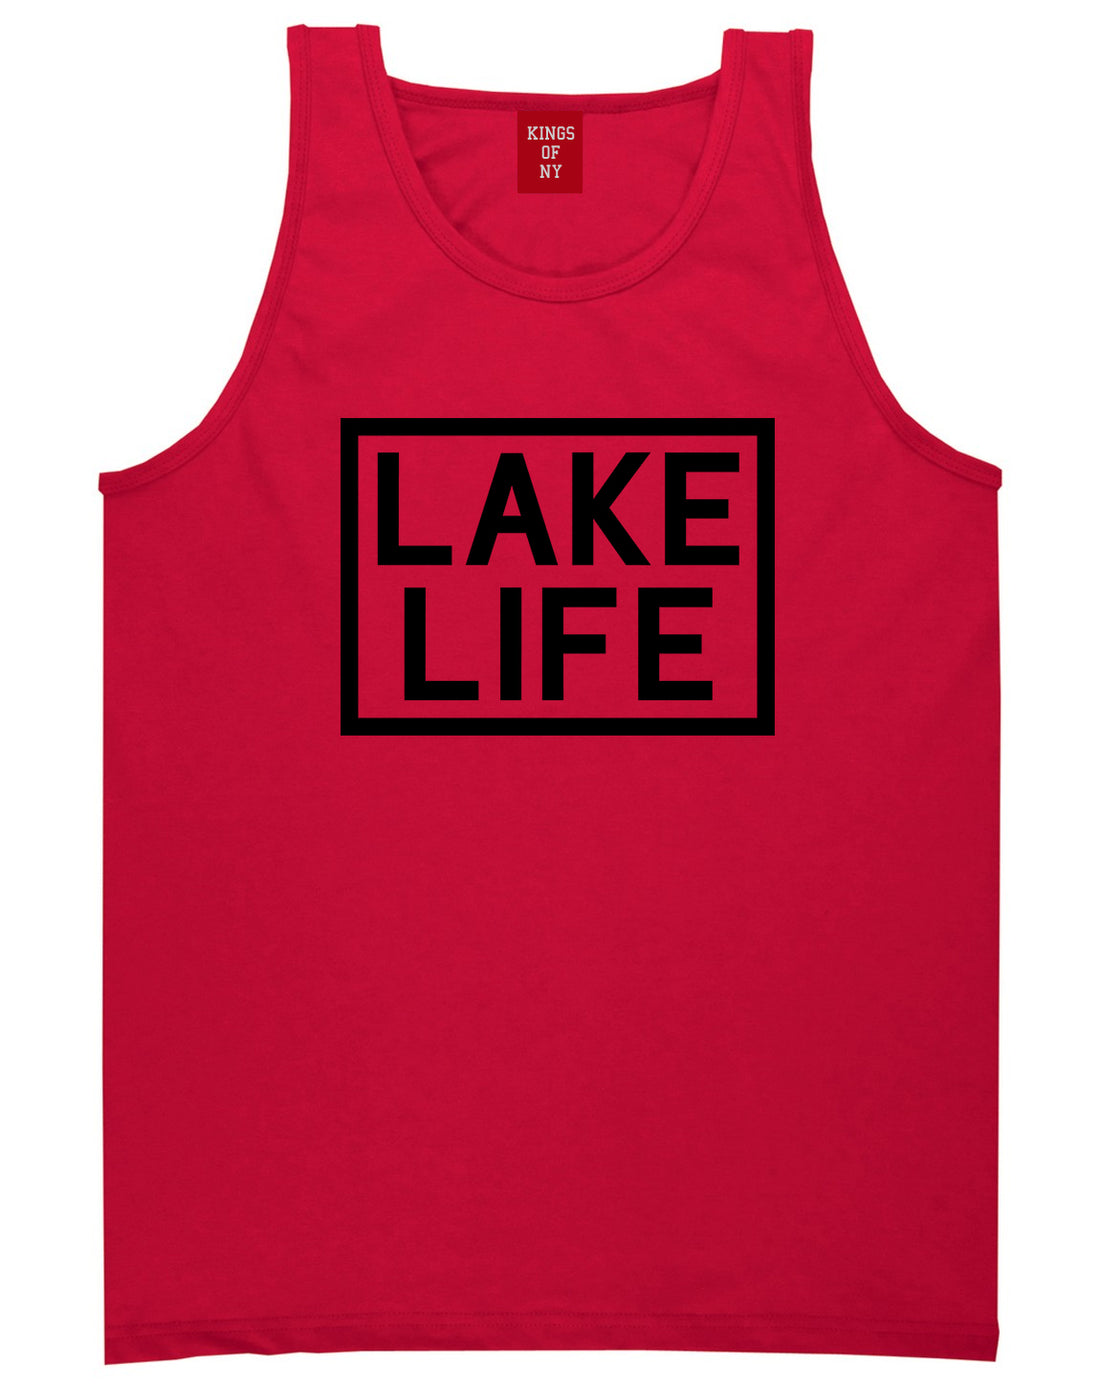 Lake Life Box Mens Tank Top Shirt Red